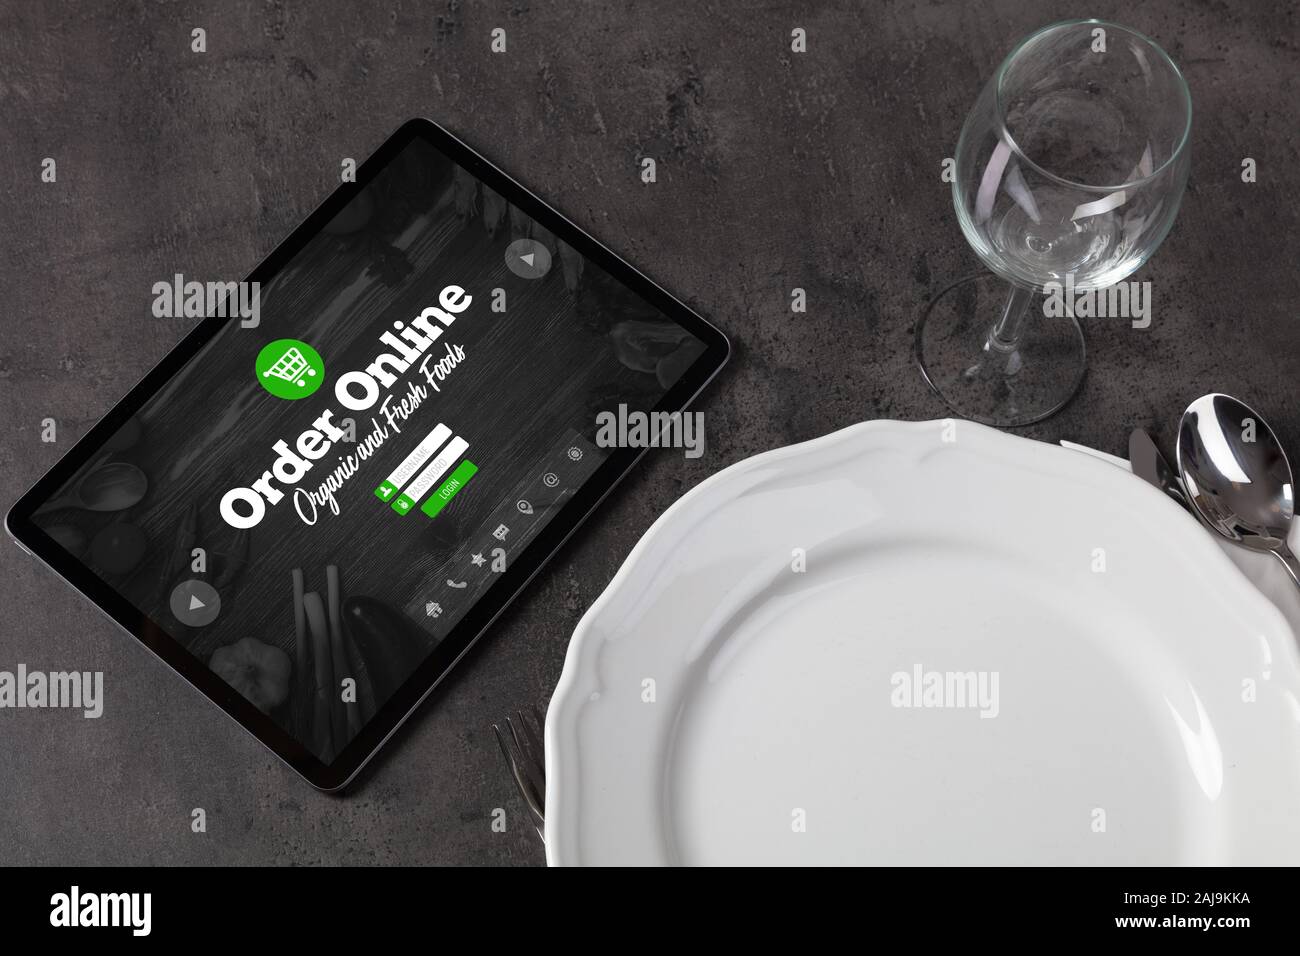 Tablet mit online Bestellung Konzept auf dem Tisch gelegen Stockfoto